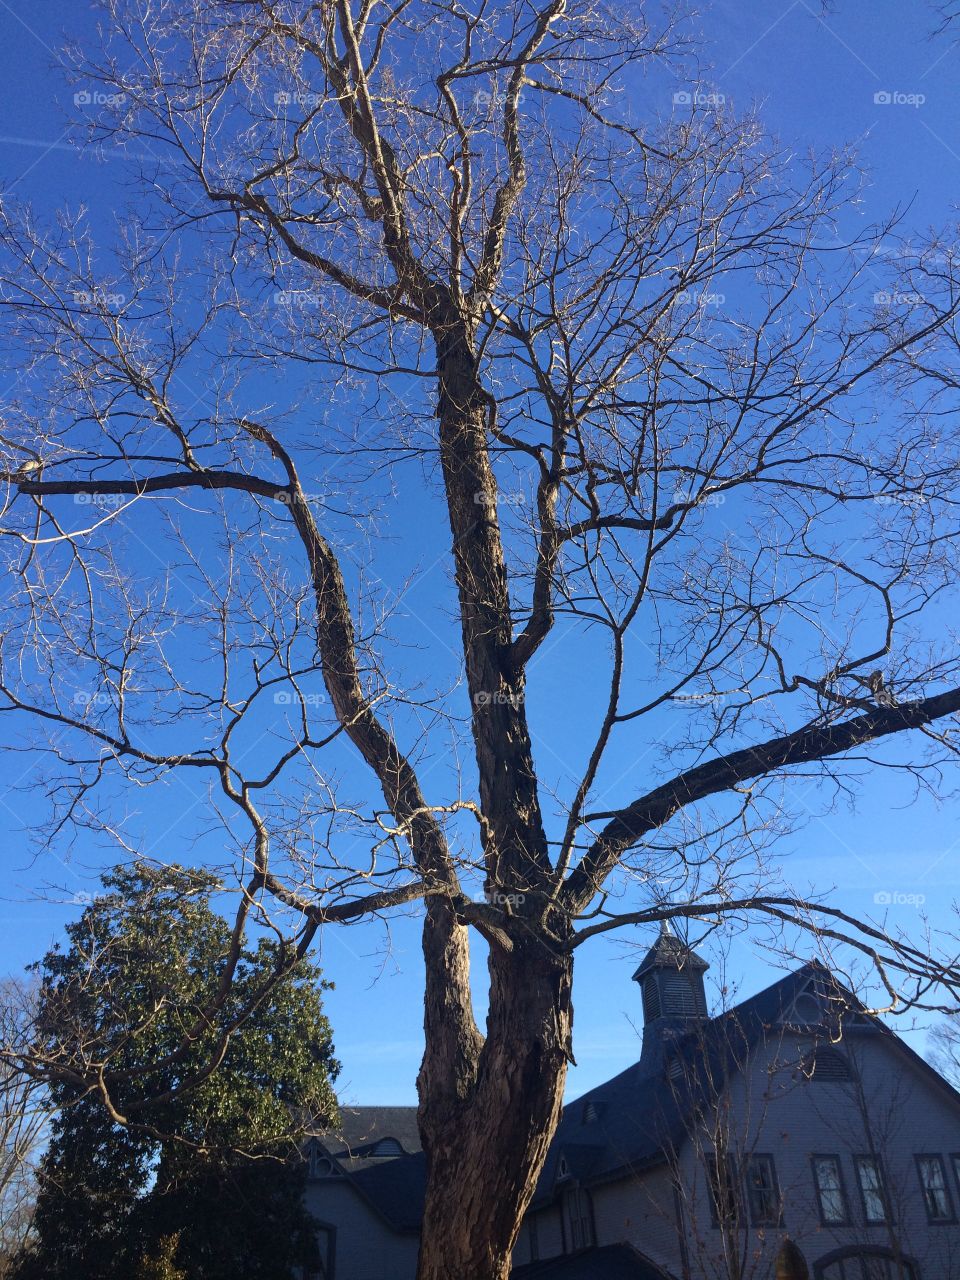 Tennessee Tree